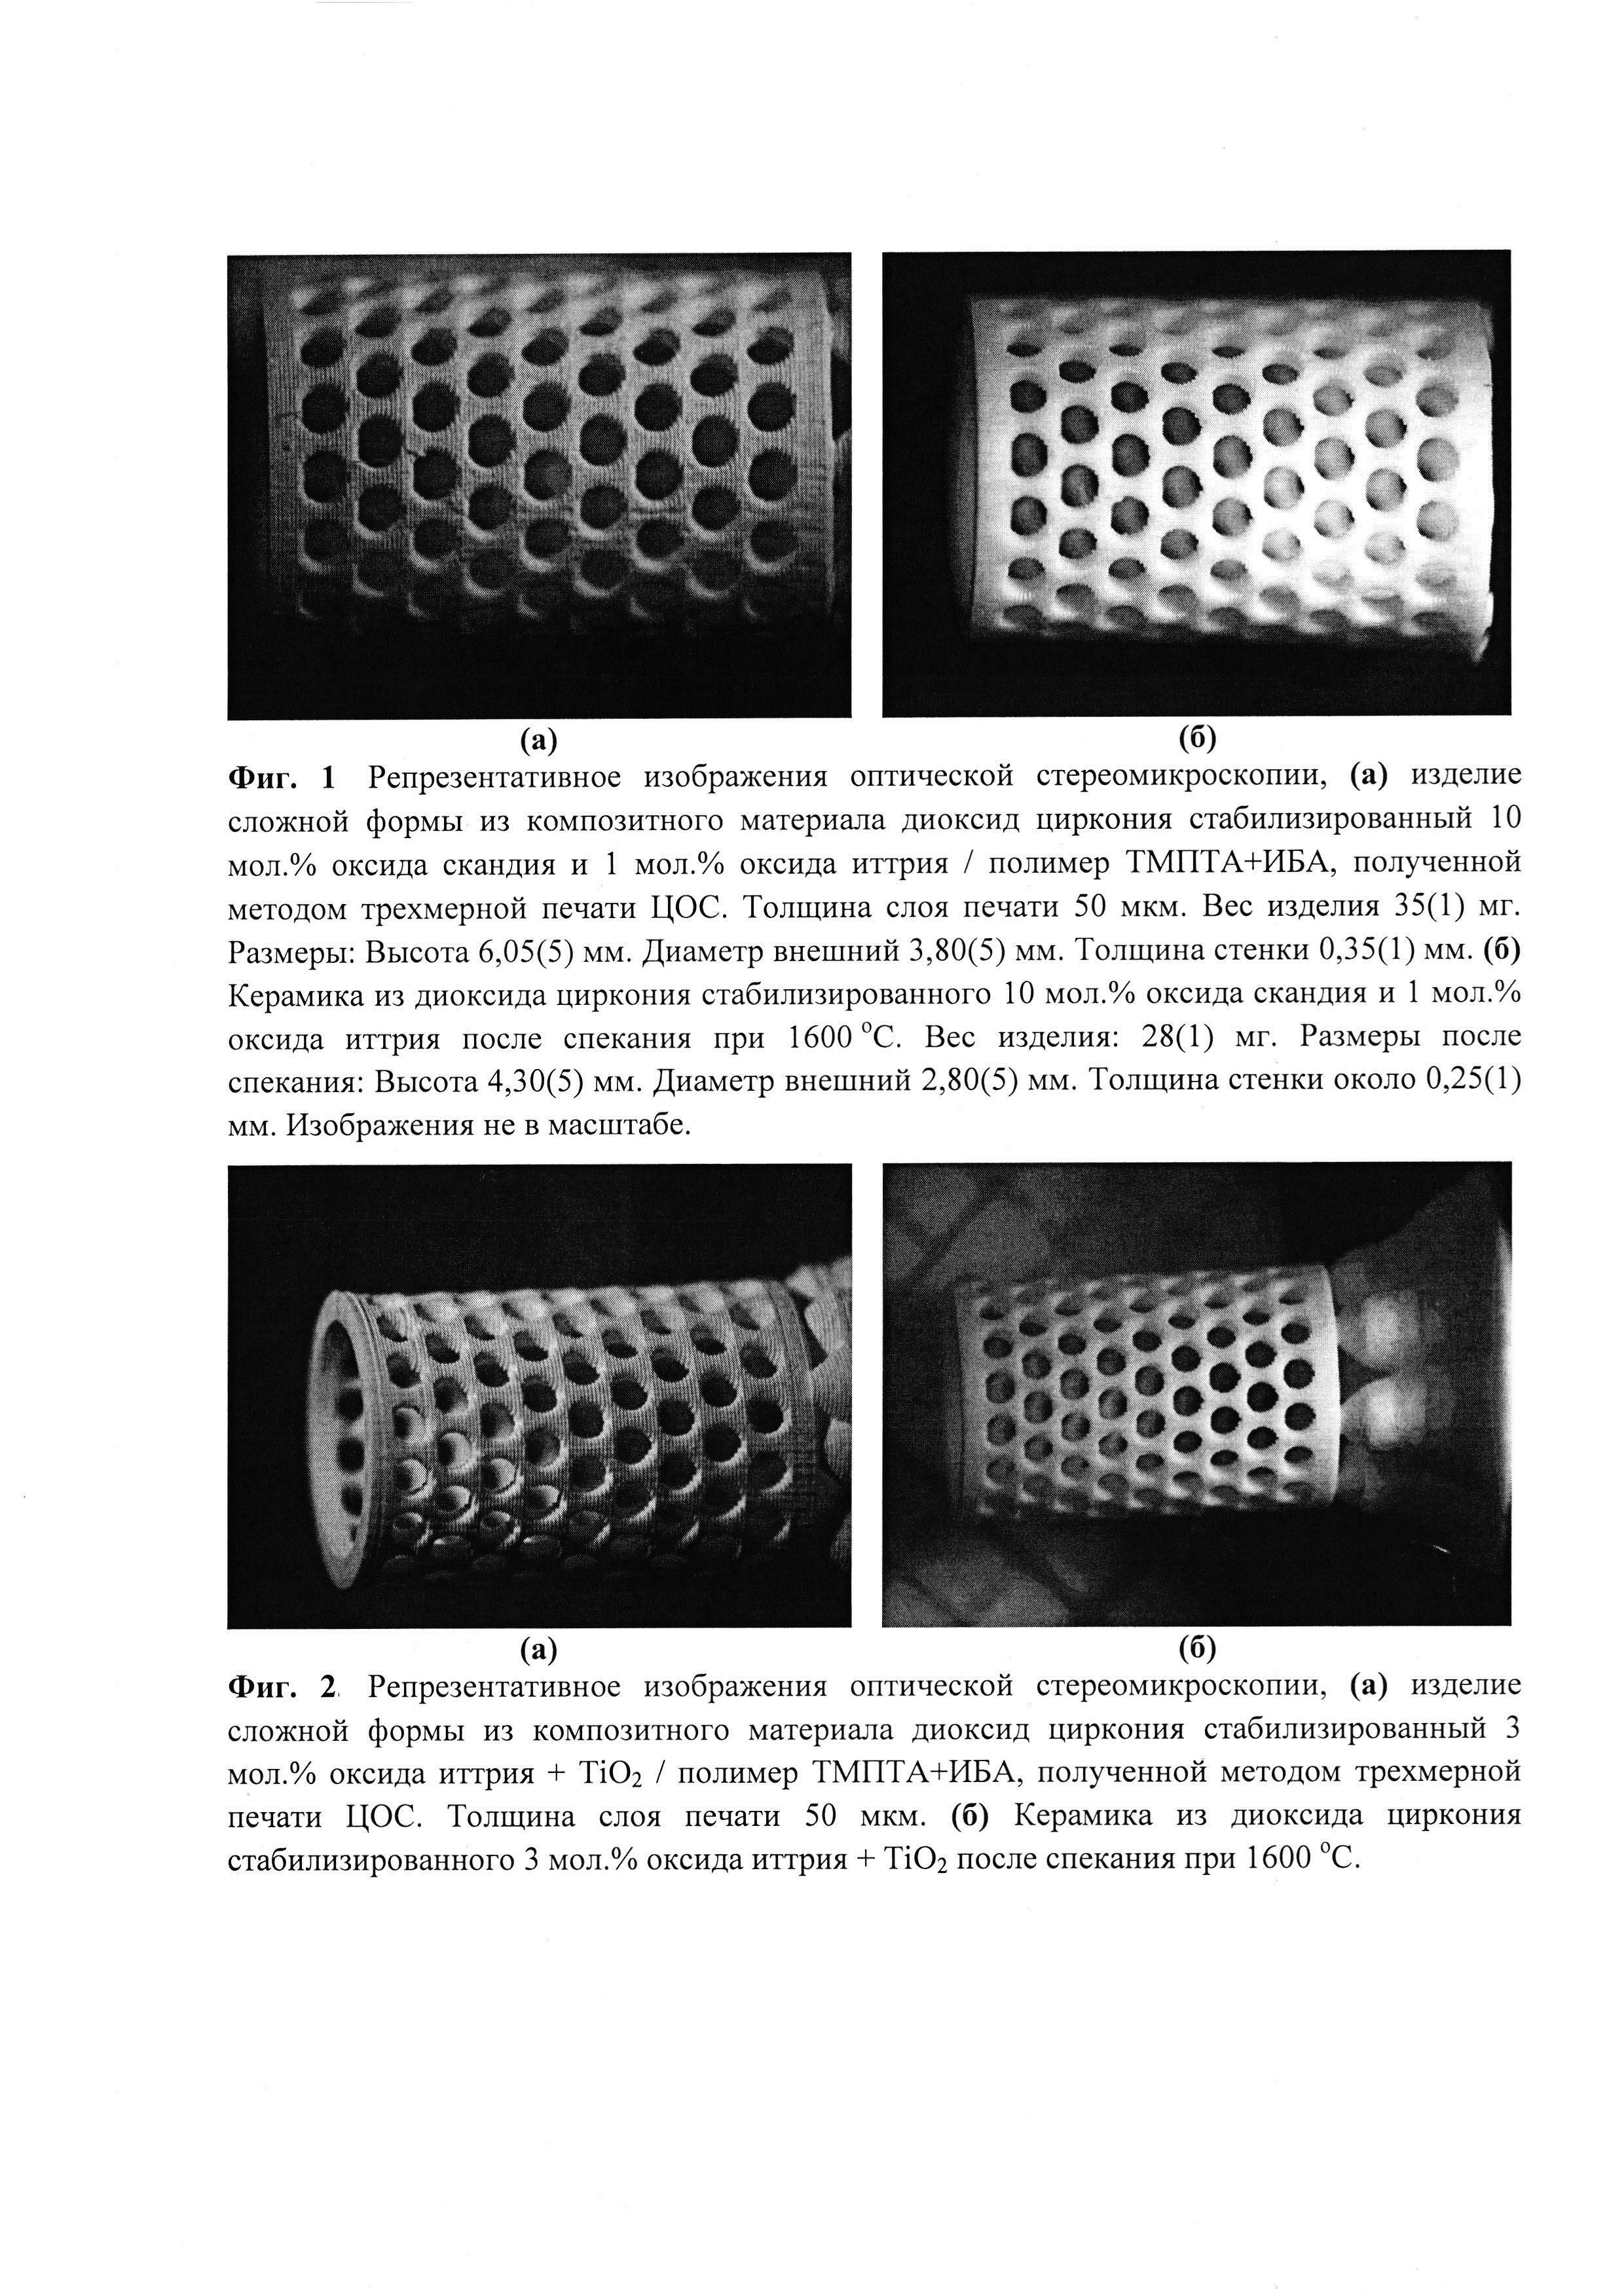 Композиция на основе стабилизированного диоксида циркония для 3D печати методом стереолитографии (Варианты)